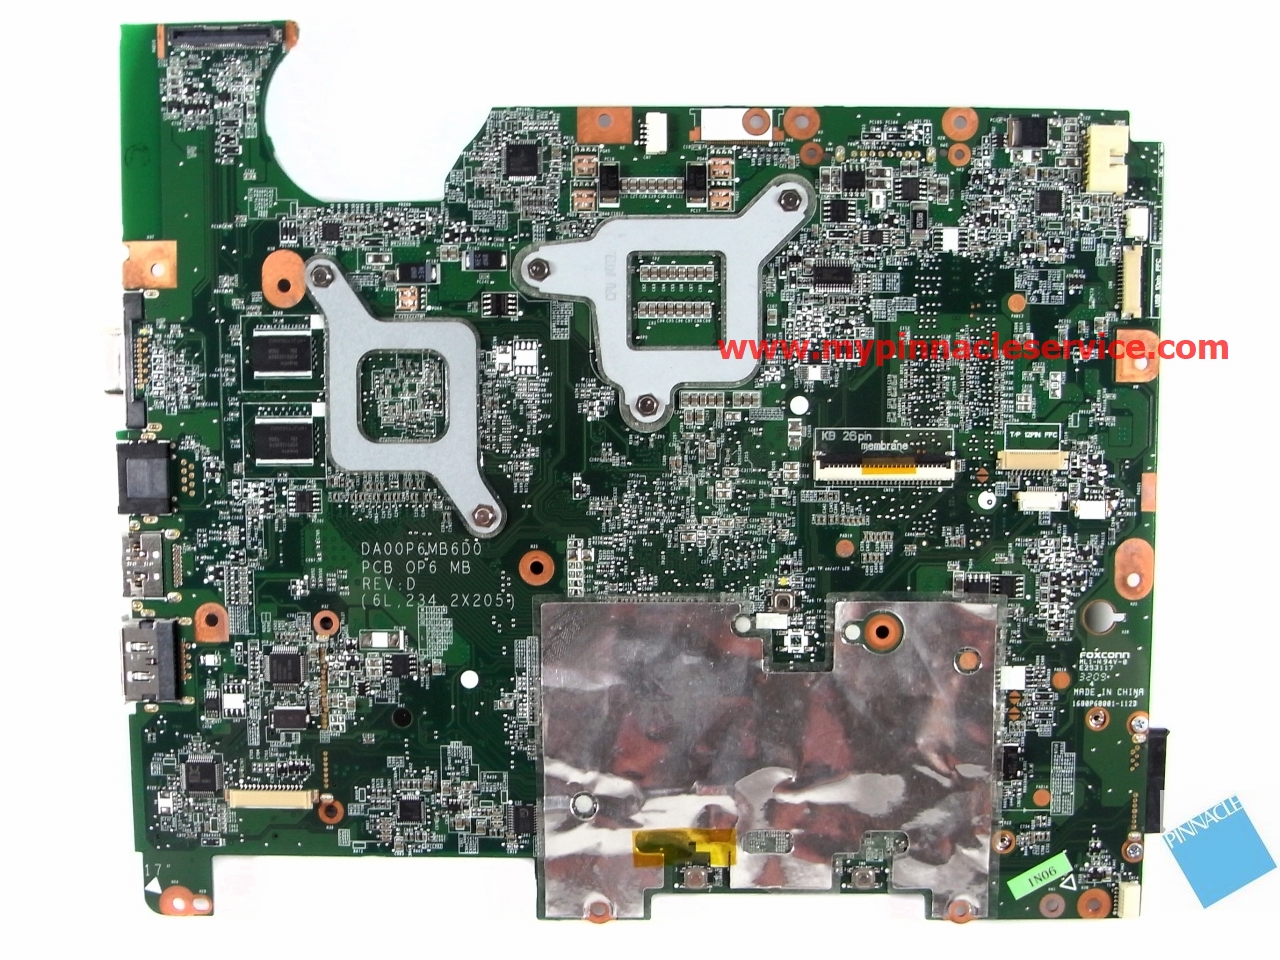 517837-001-motherboard-for-compaq-presario-cq61-daoop6mb6d0-31op6mb00t0-r0010710.jpg